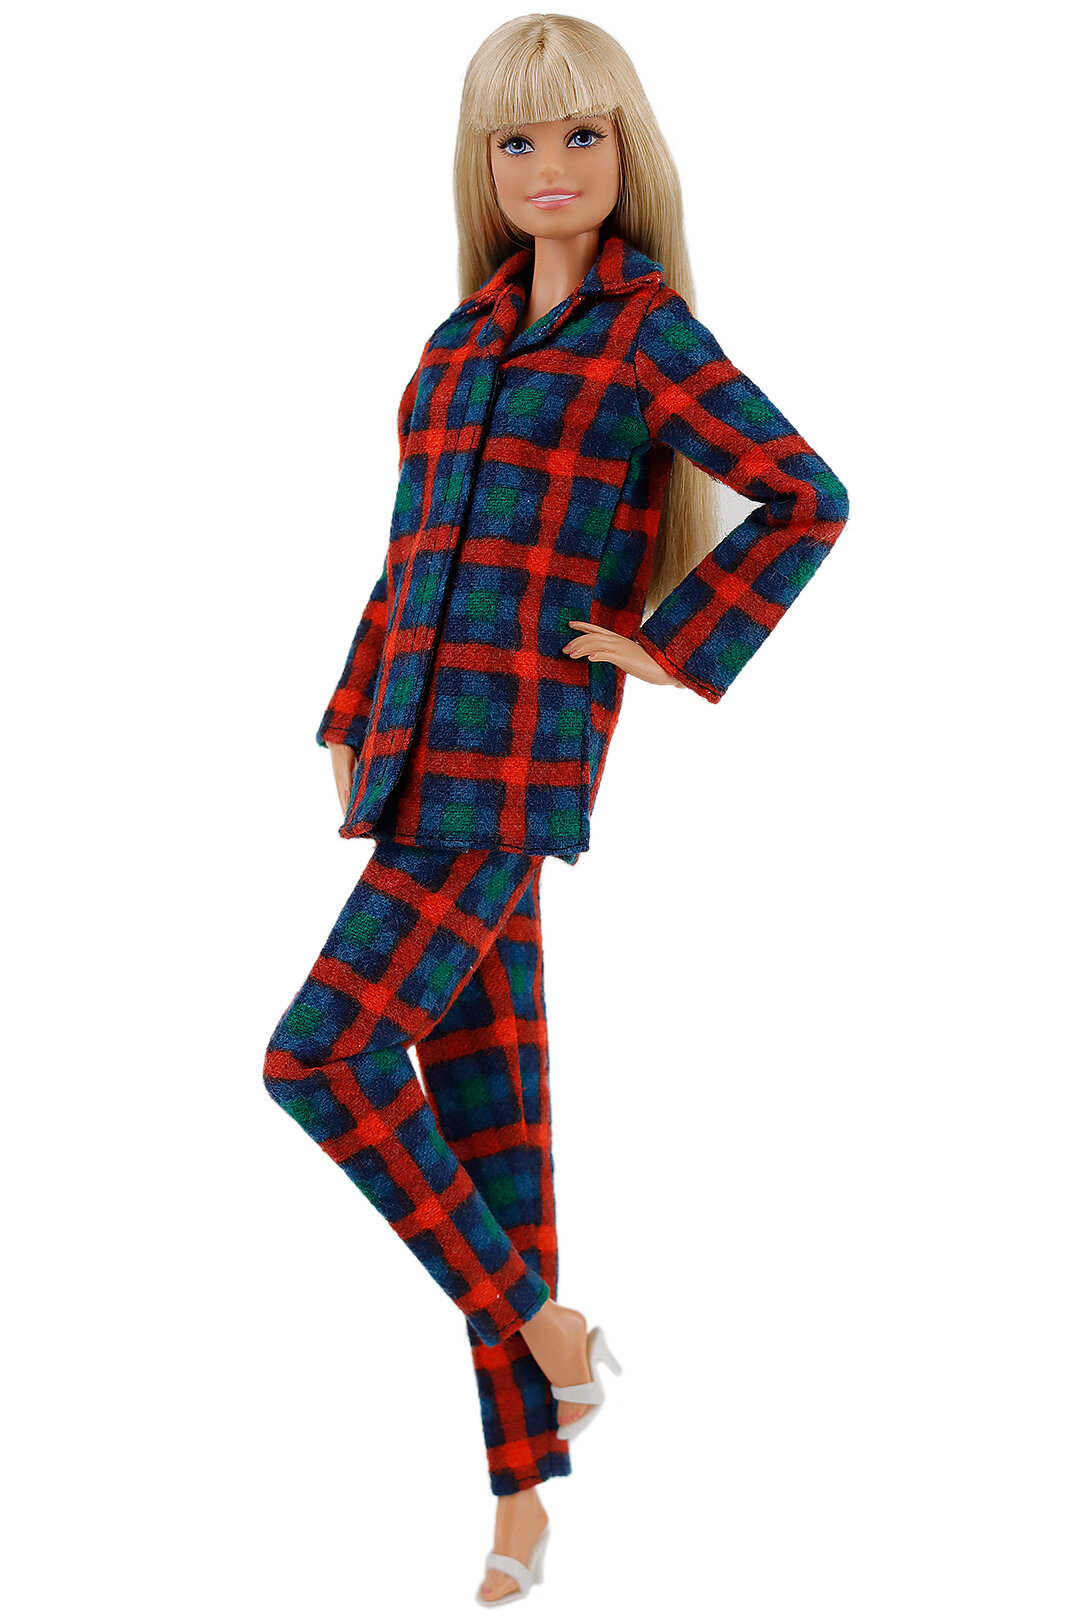 Хлопковая пижама для кукол 29 см. типа барби "Куколкины сны" цвета "красная клетка"